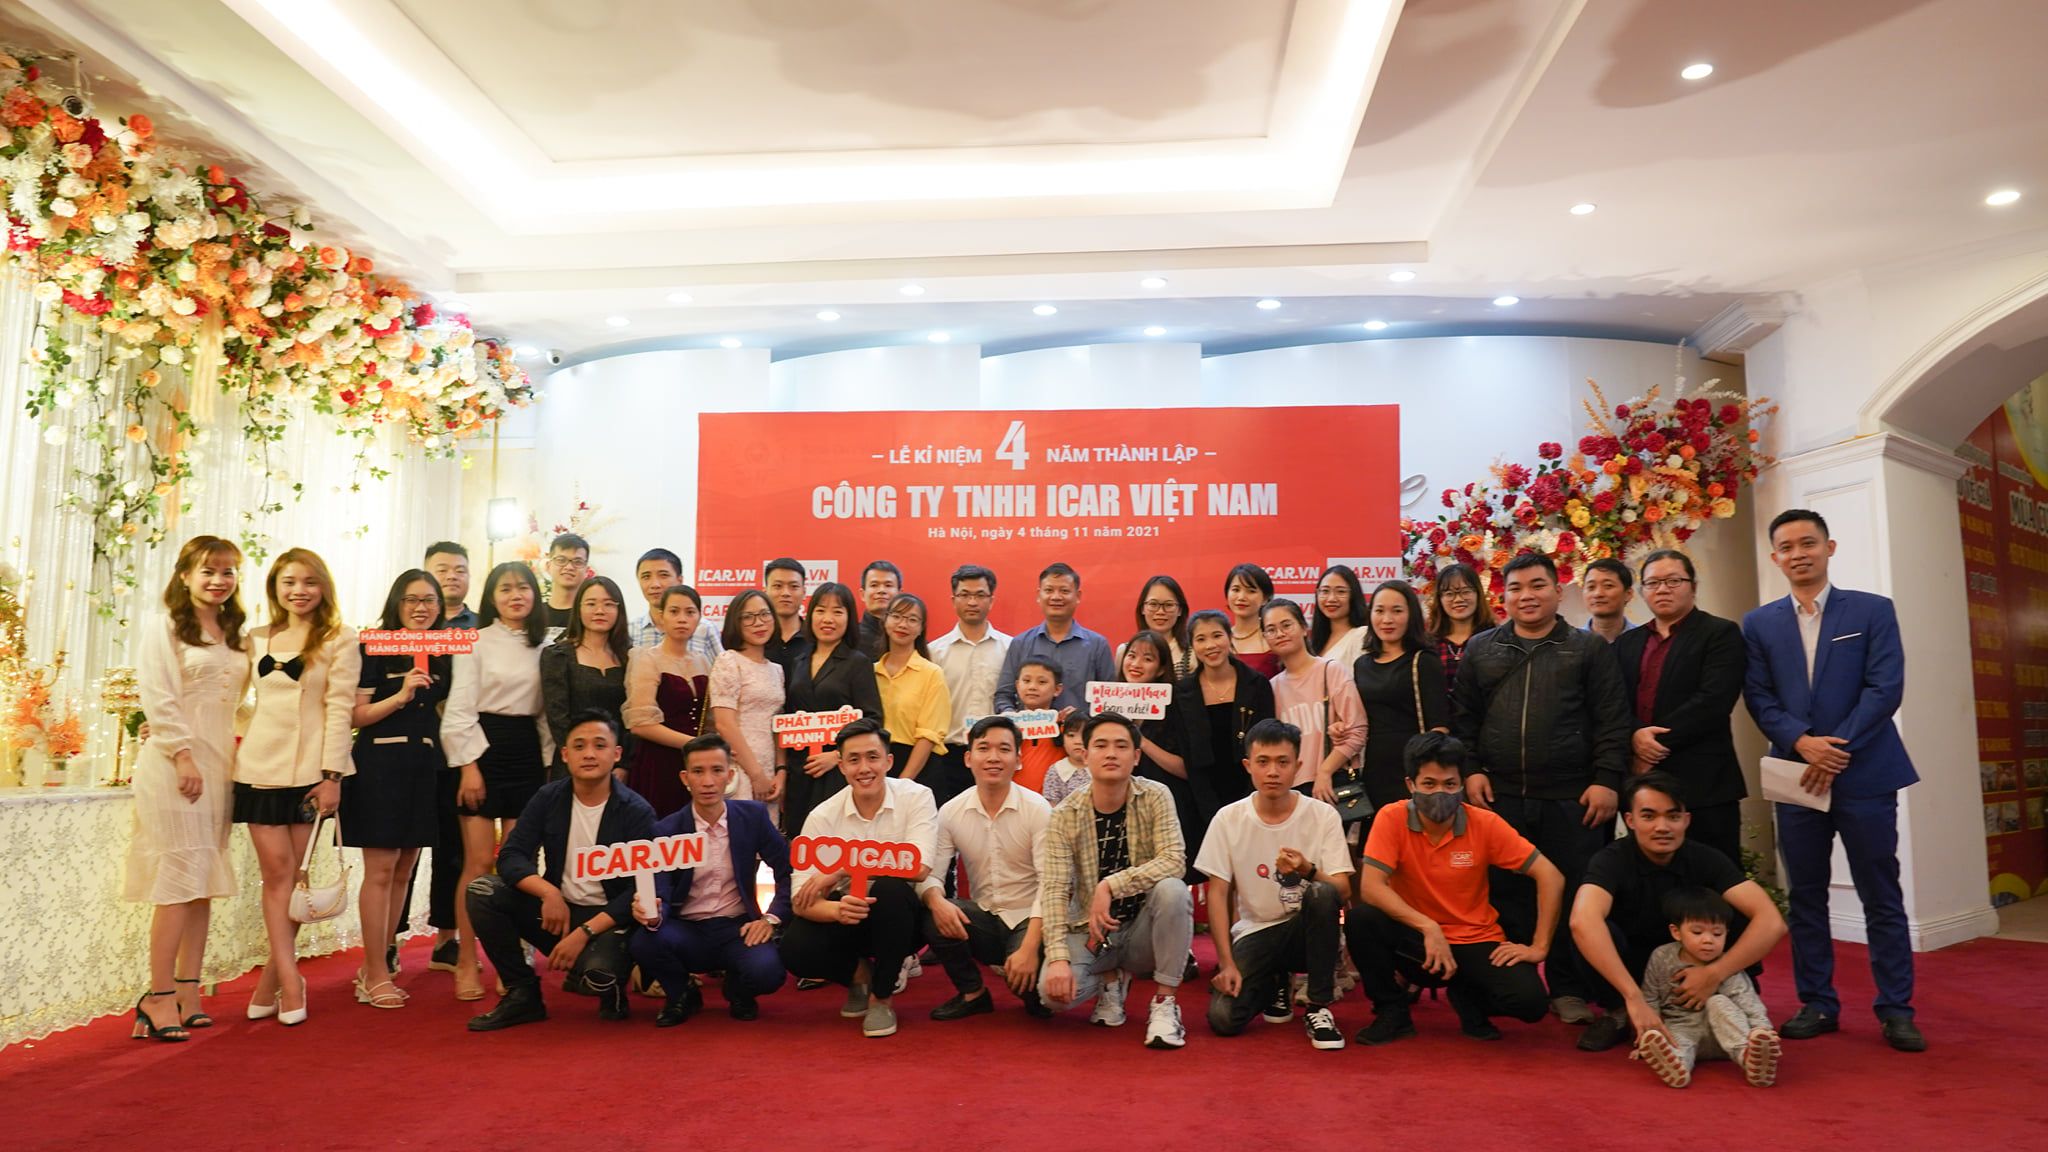 ICAR Việt Nam – Đơn vị nghiên cứu và phát triển đồ chơi công nghệ ô tô hàng đầu Việt Nam